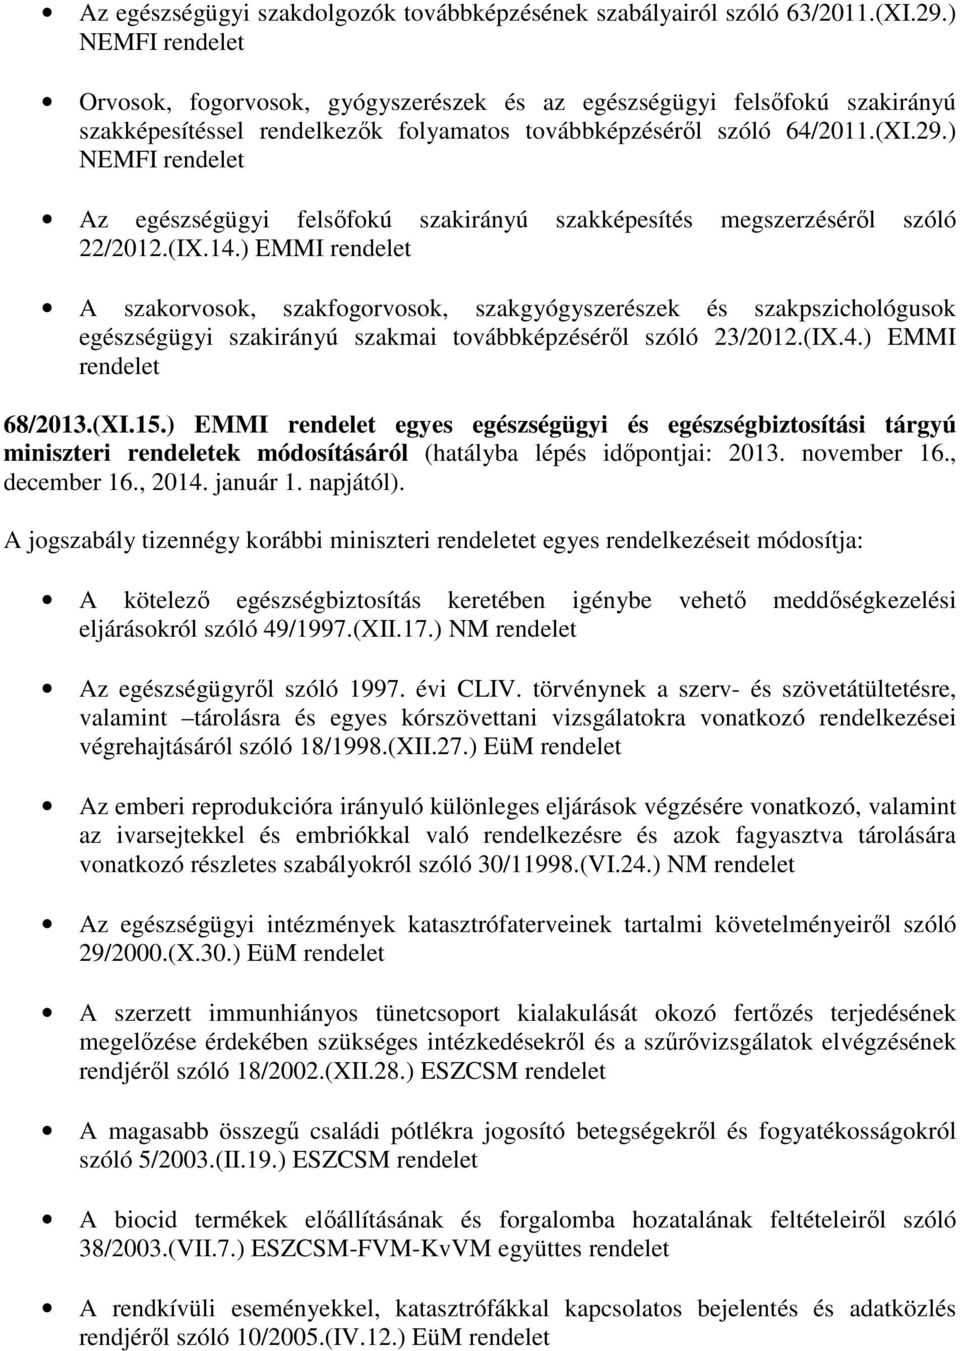 ) NEMFI rendelet Az egészségügyi felsőfokú szakirányú szakképesítés megszerzéséről szóló 22/2012.(IX.14.